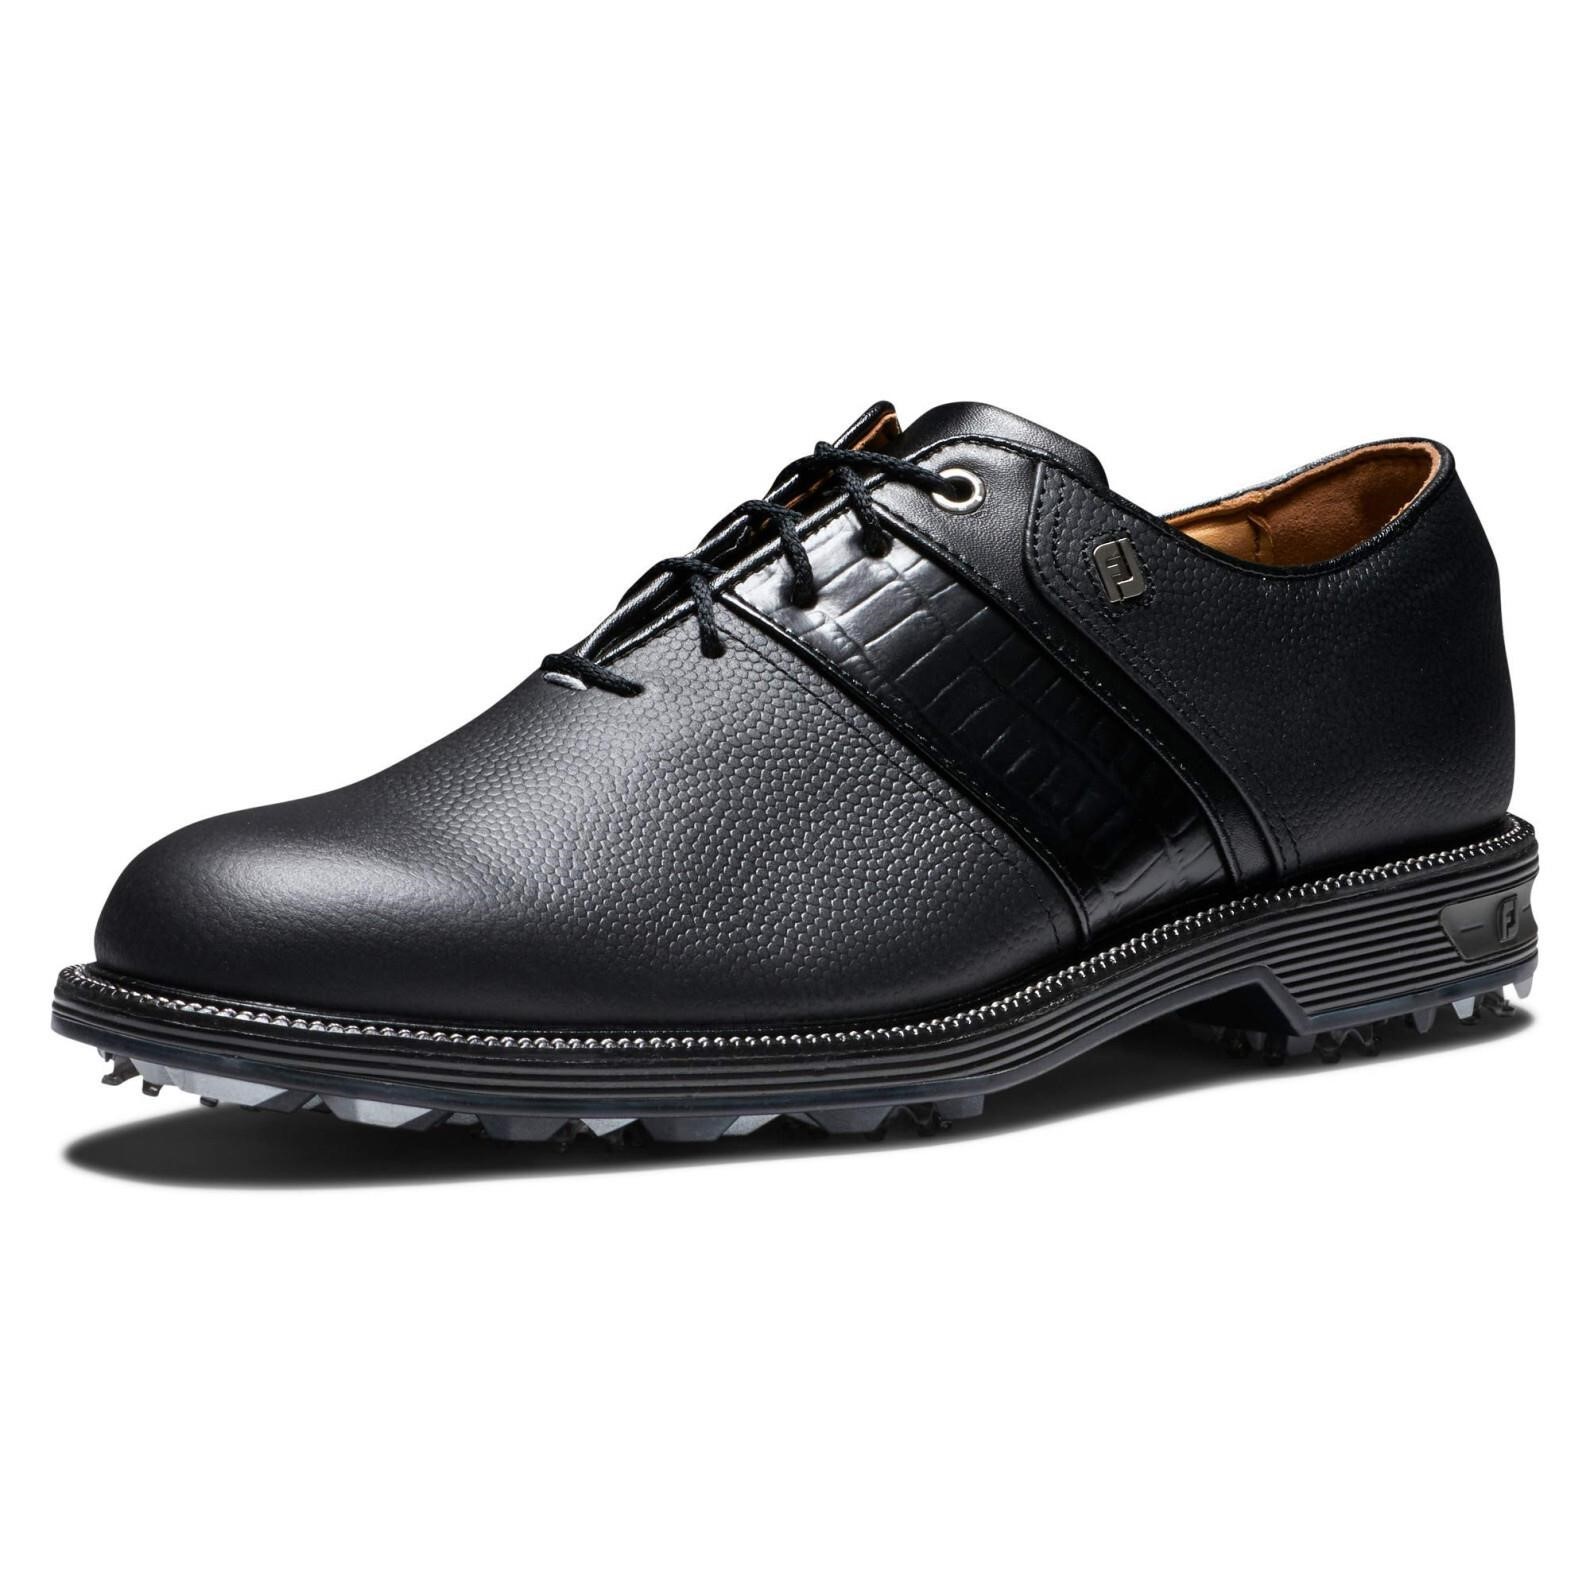 FootJoy Men's Premiere Series-Packard Golf Shoe, B